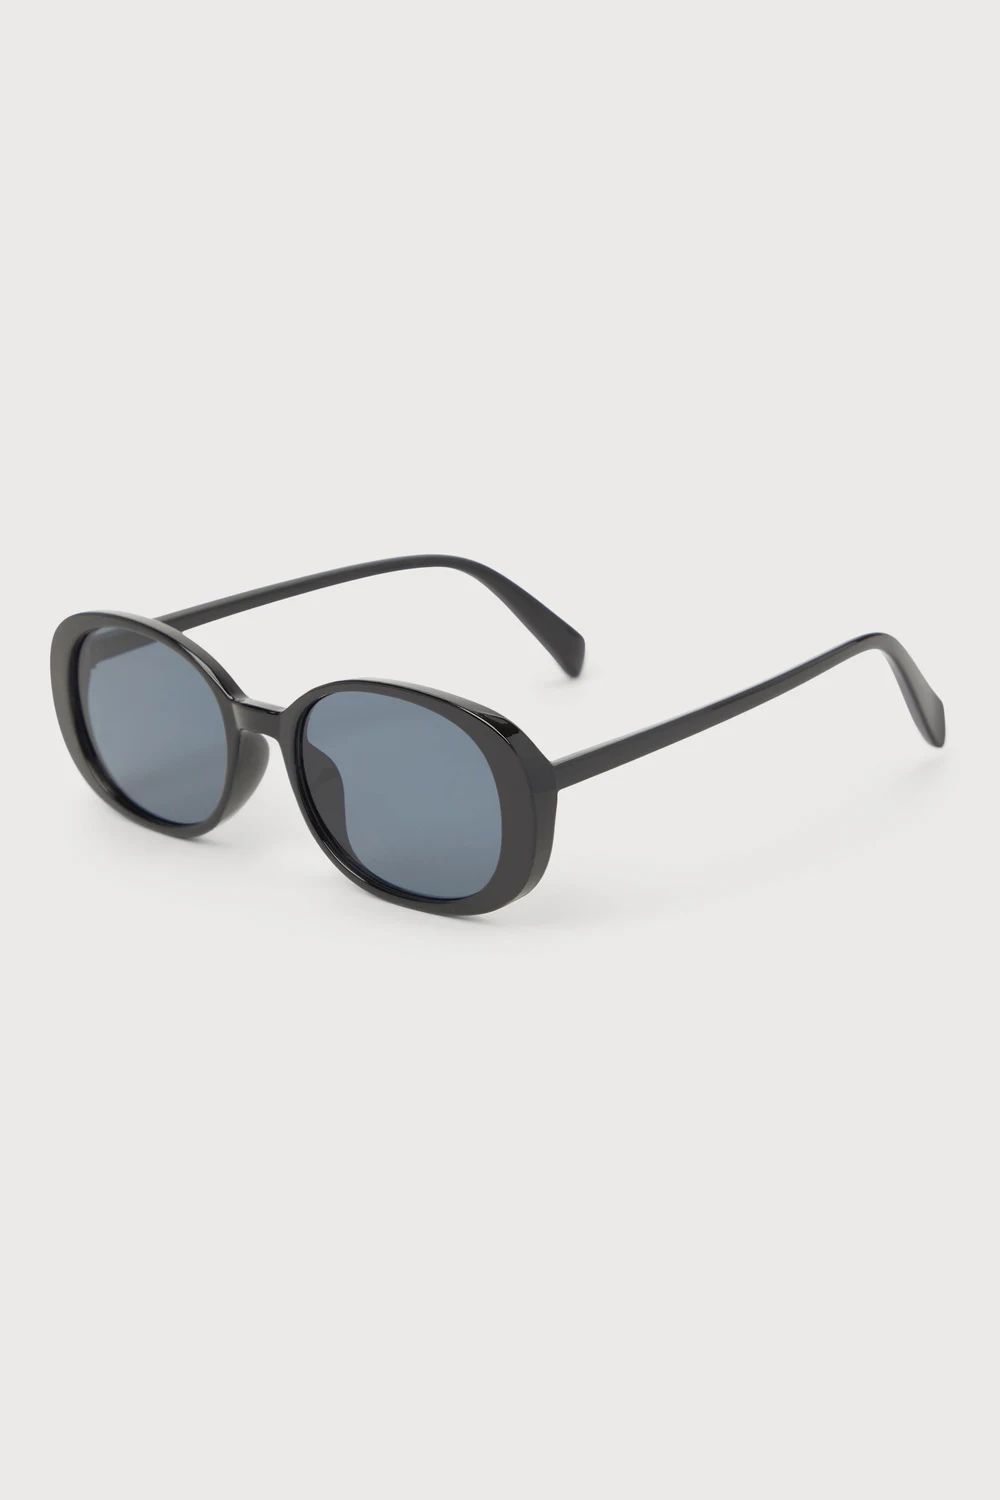 Posh Sensation Black Oval Sunglasses | Lulus (US)